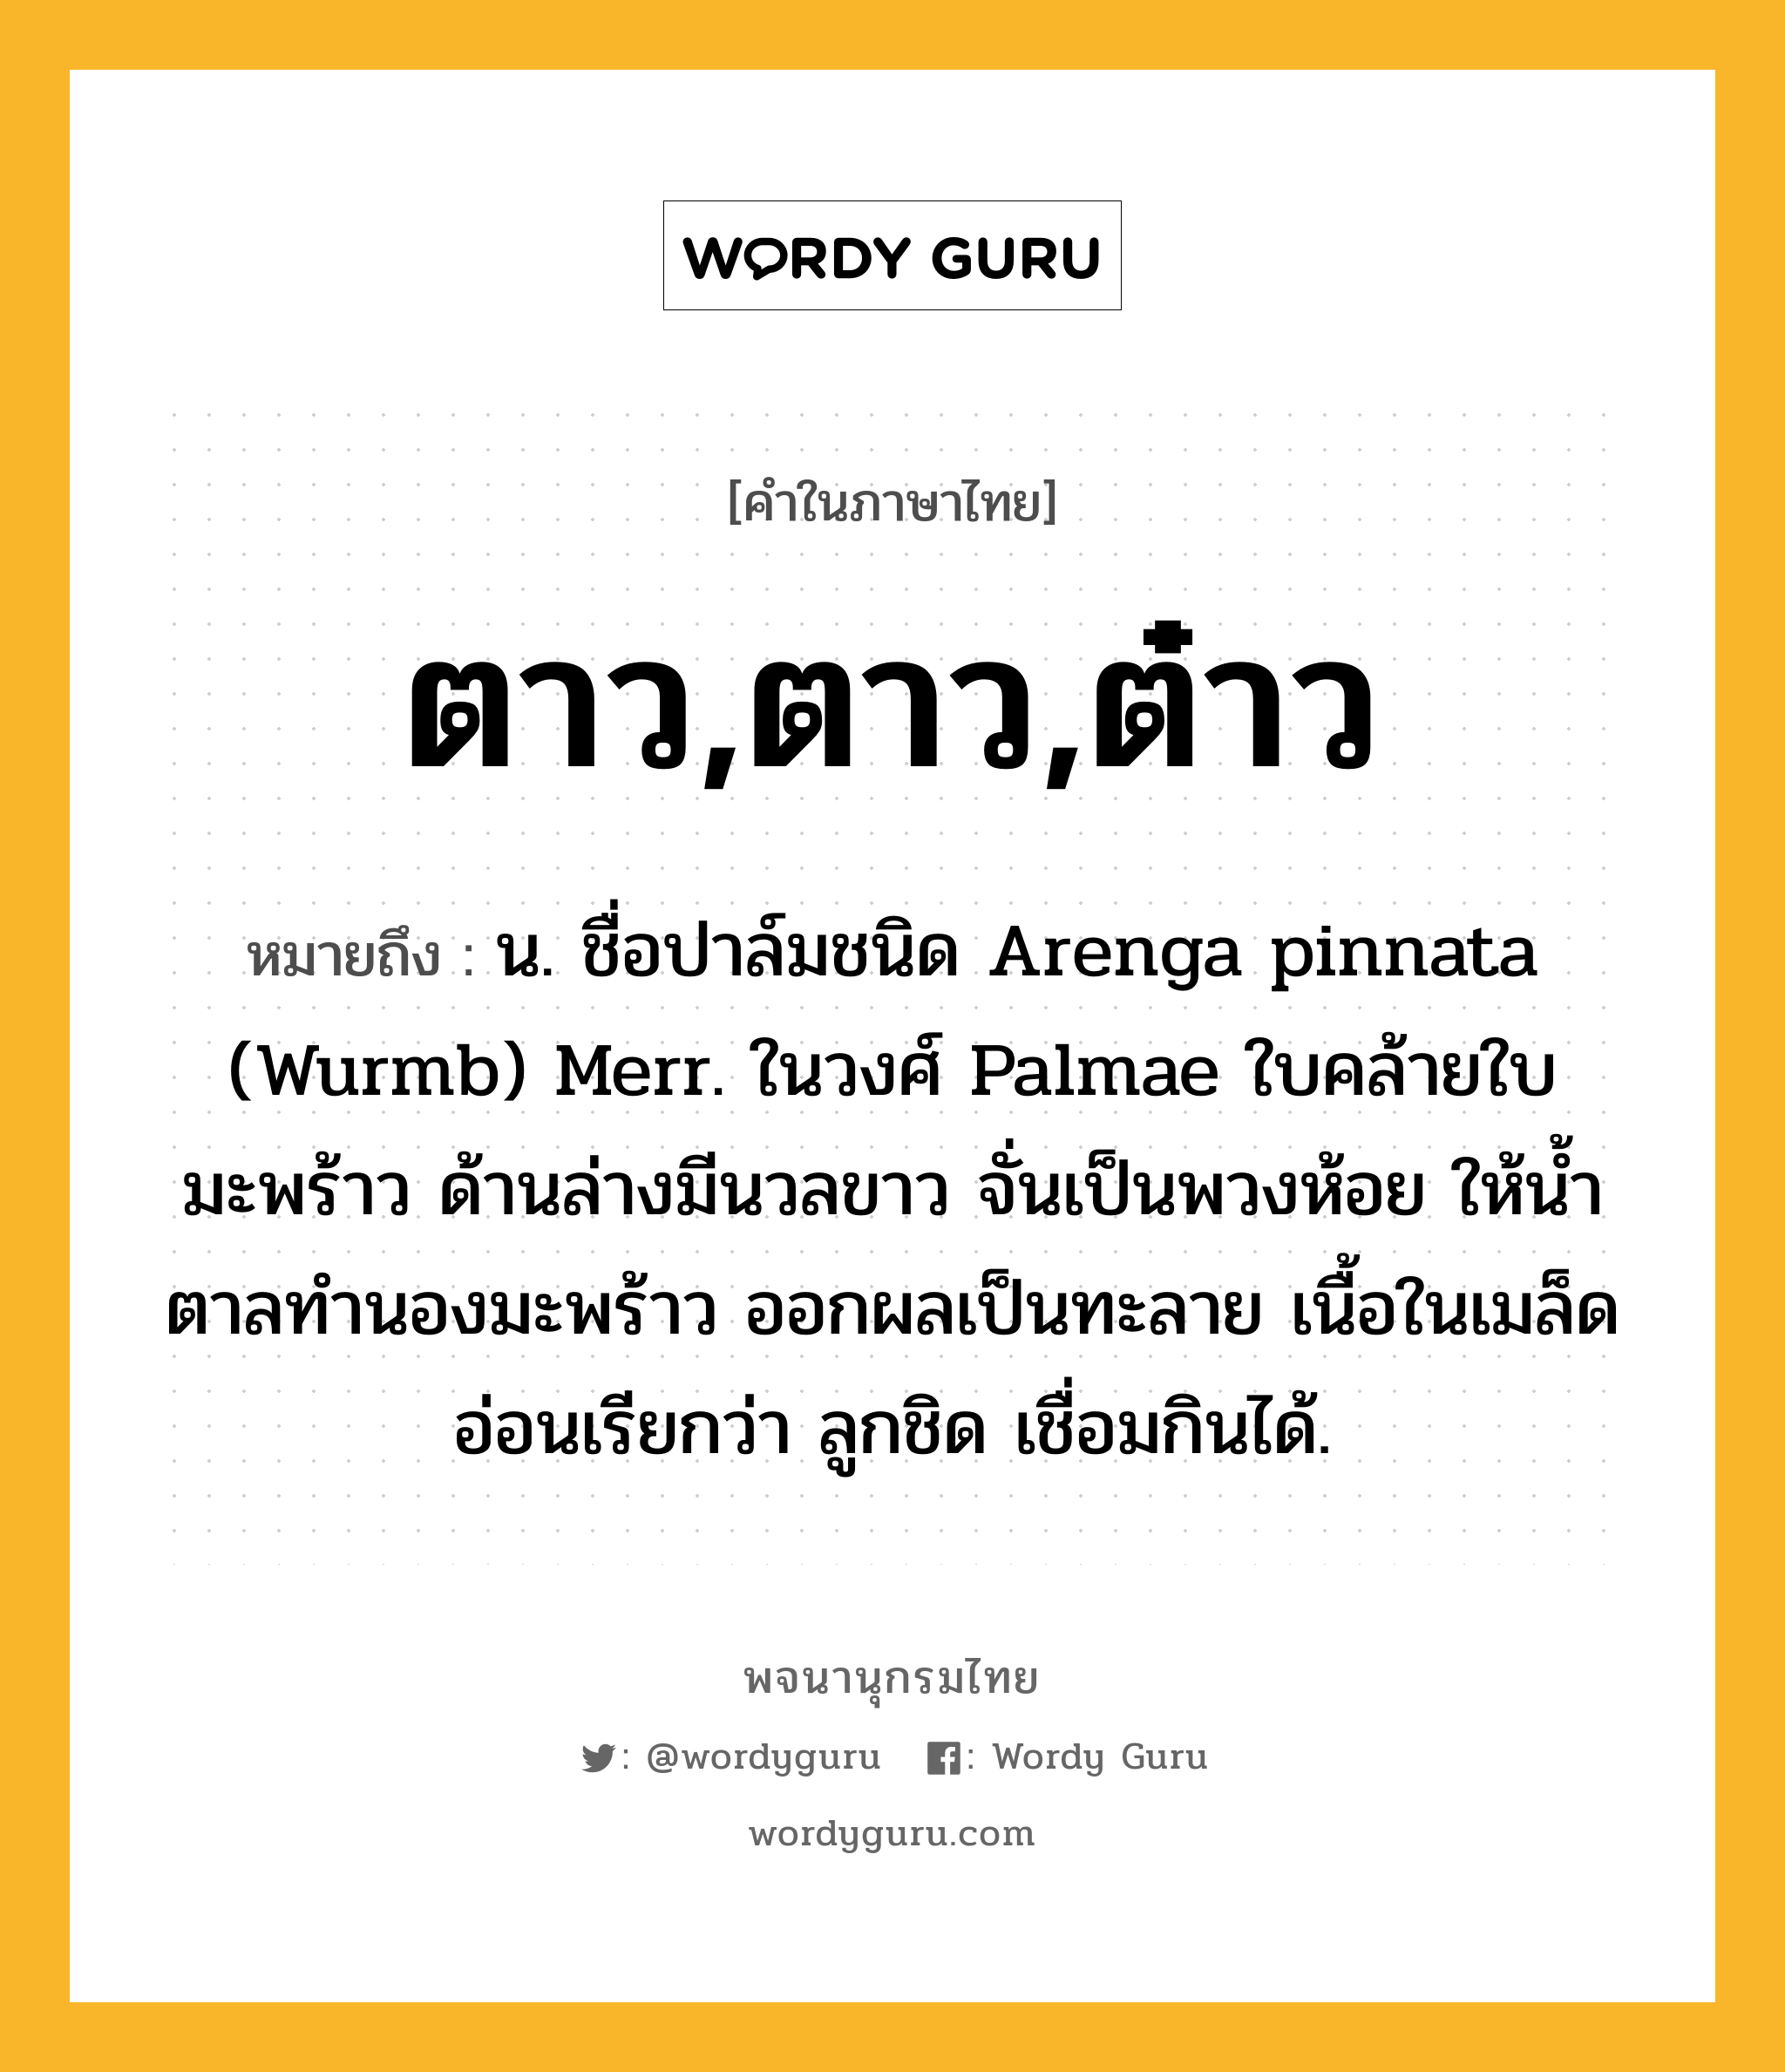 ตาว,ตาว,ต๋าว ความหมาย หมายถึงอะไร?, คำในภาษาไทย ตาว,ตาว,ต๋าว หมายถึง น. ชื่อปาล์มชนิด Arenga pinnata (Wurmb) Merr. ในวงศ์ Palmae ใบคล้ายใบมะพร้าว ด้านล่างมีนวลขาว จั่นเป็นพวงห้อย ให้นํ้าตาลทํานองมะพร้าว ออกผลเป็นทะลาย เนื้อในเมล็ดอ่อนเรียกว่า ลูกชิด เชื่อมกินได้.